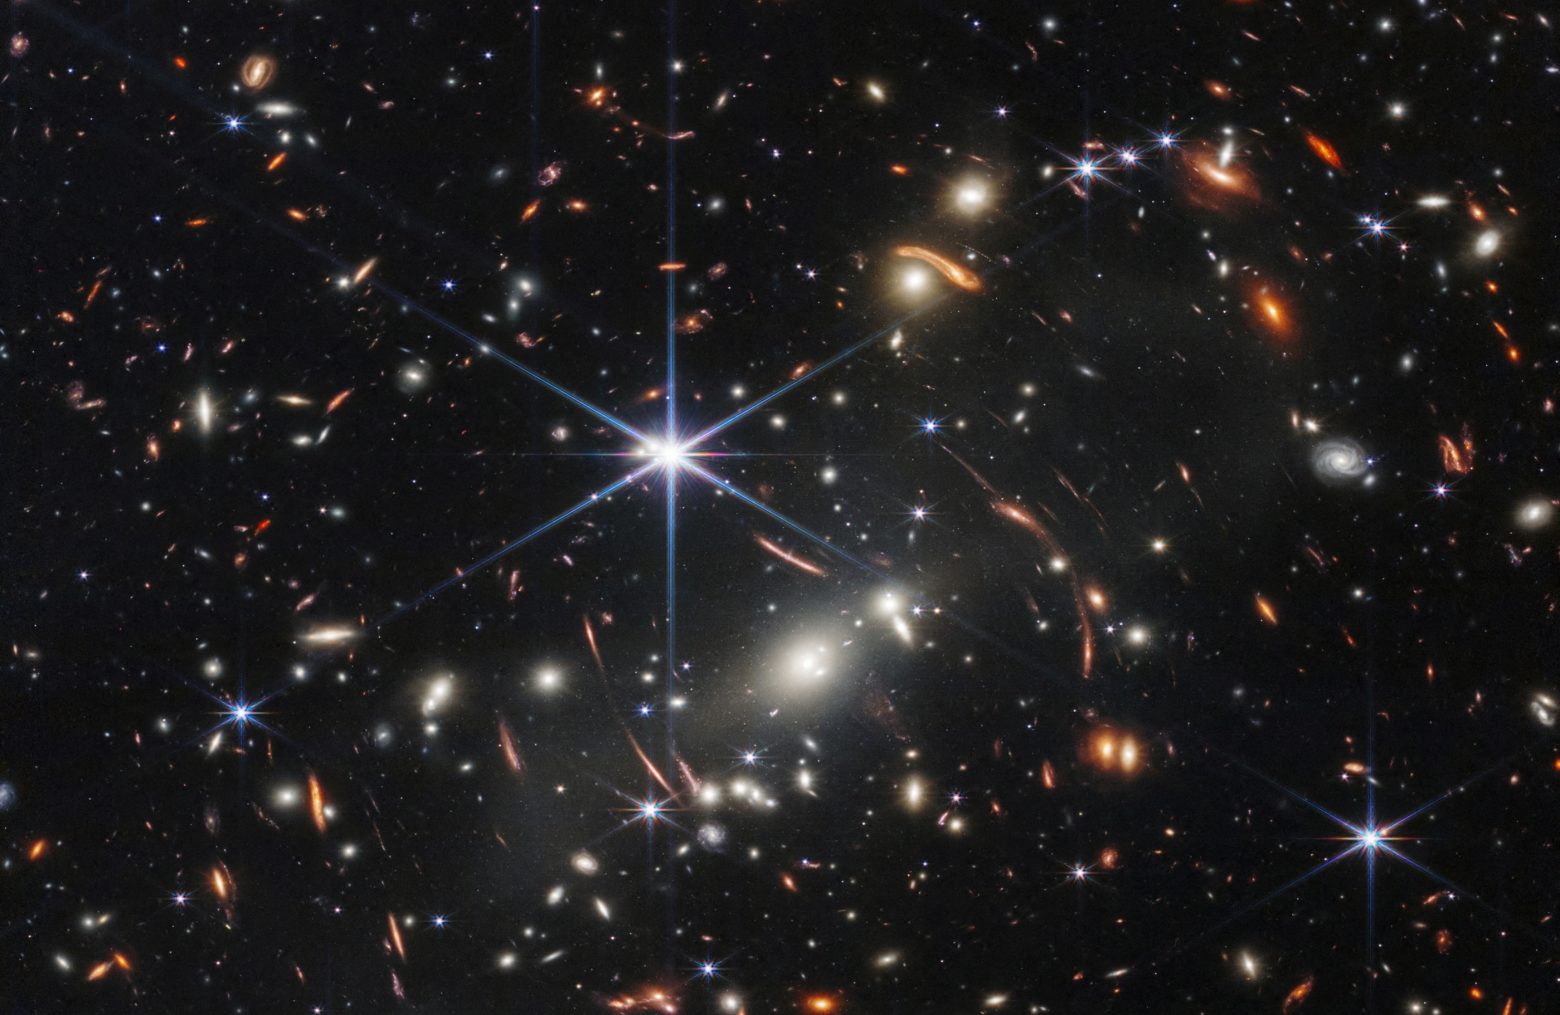 Διάστημα: Ιστορική στιγμή - Φωτογραφία δείχνει πώς ήταν το Σύμπαν 13 δισ. χρόνια πριν